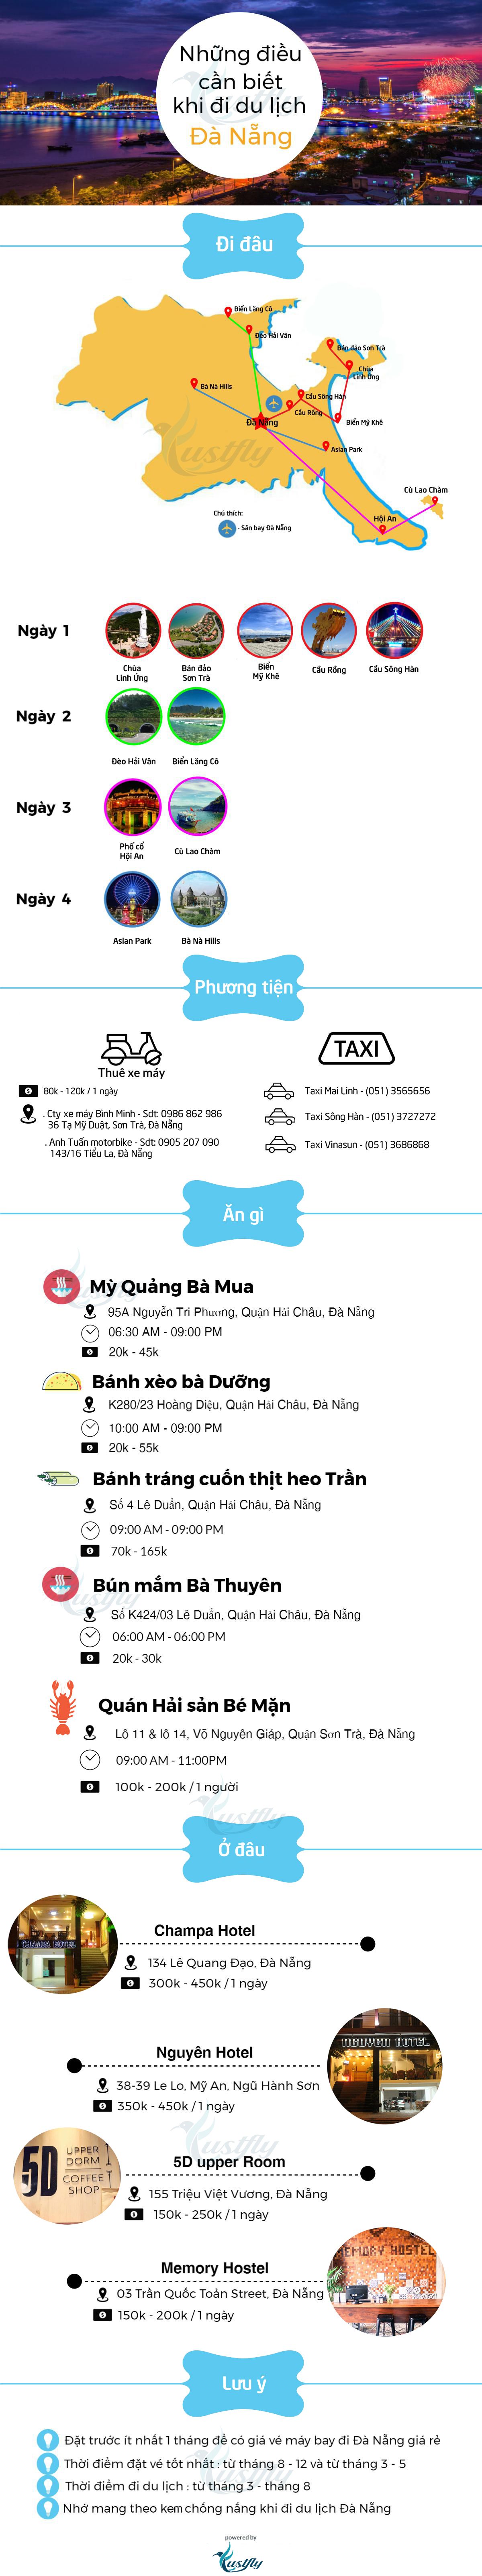 du lịch Đà Nẵng từ Hà Nội